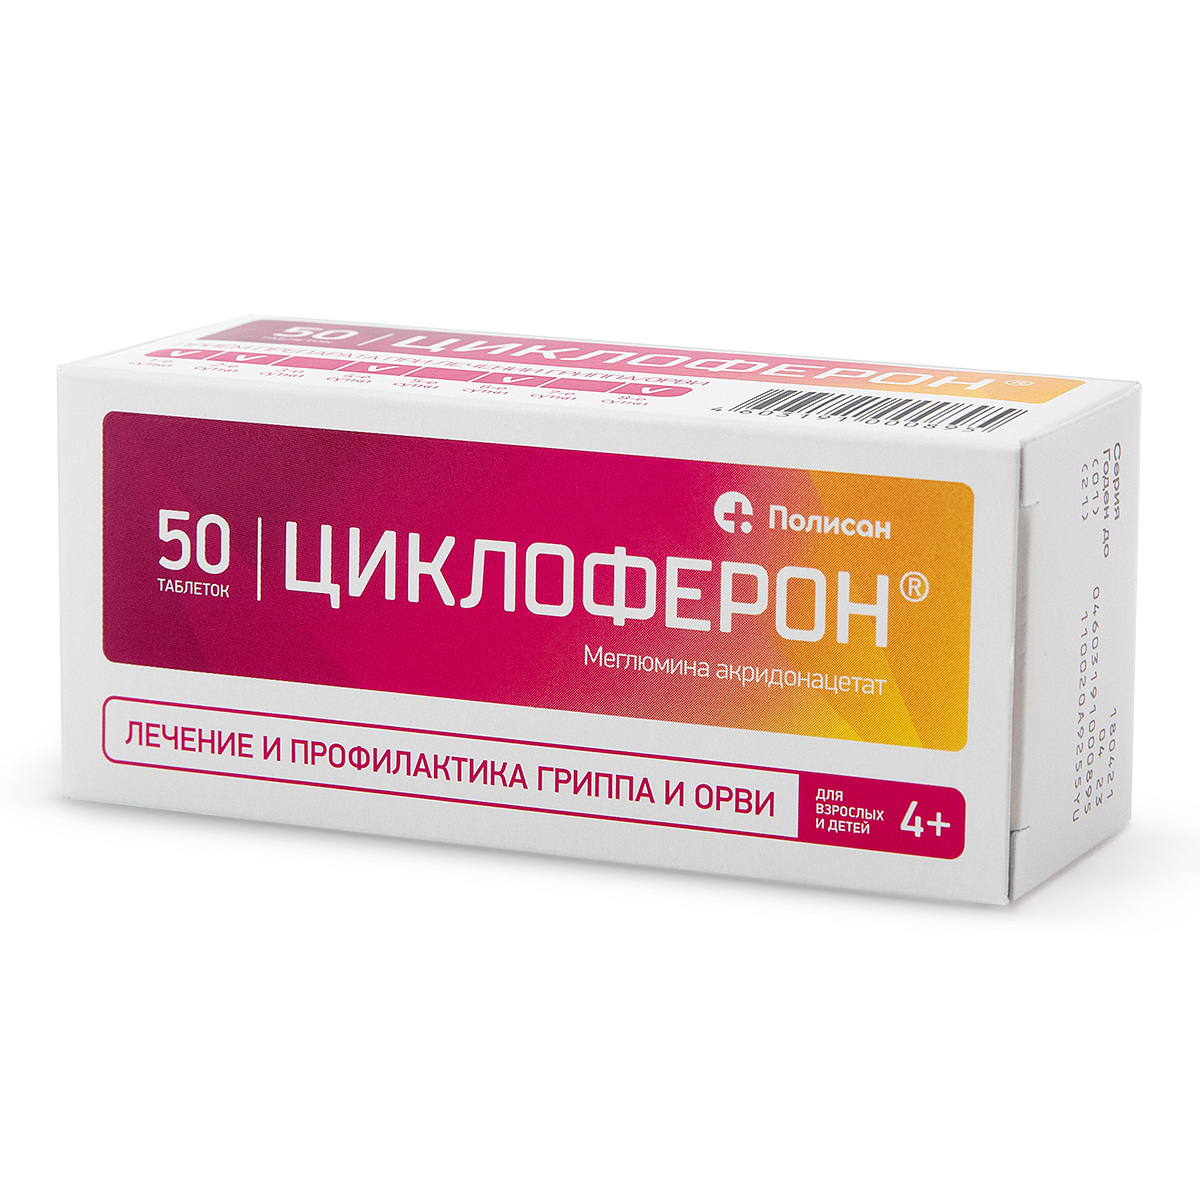 Купить Циклоферон таблетки 150 мг 50 шт., Полисан, Россия